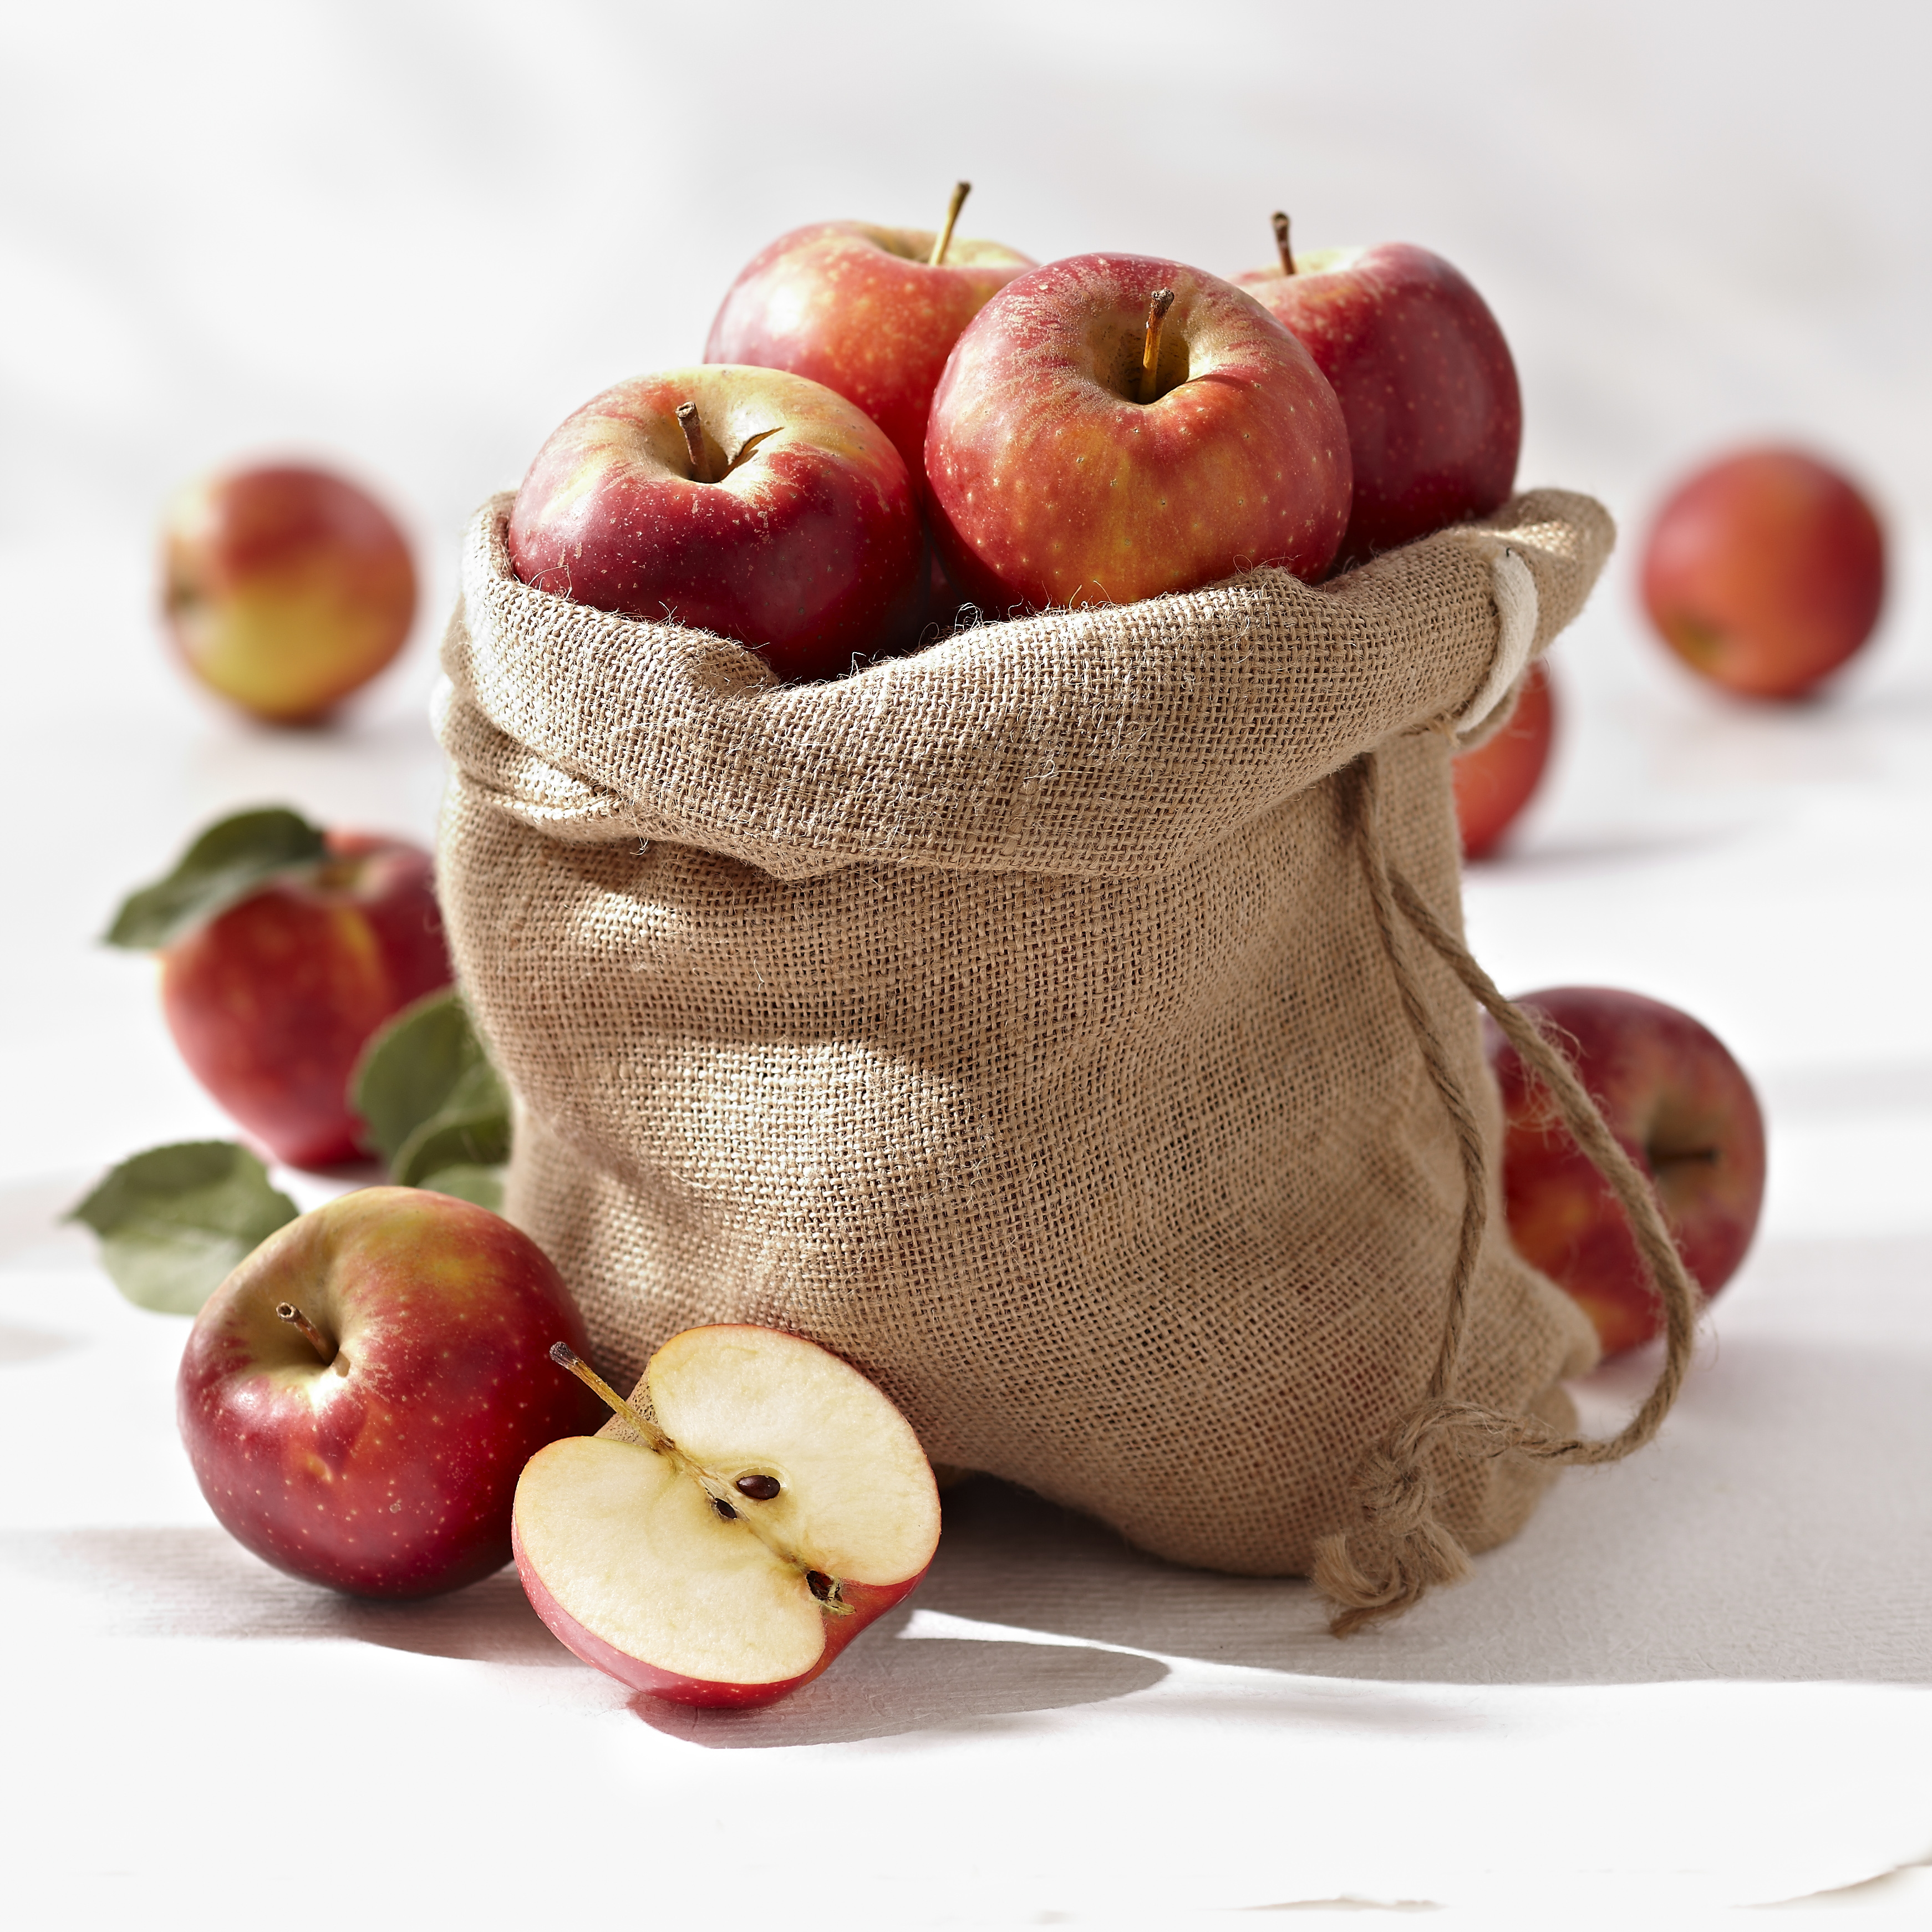 Comment conserver ses pommes